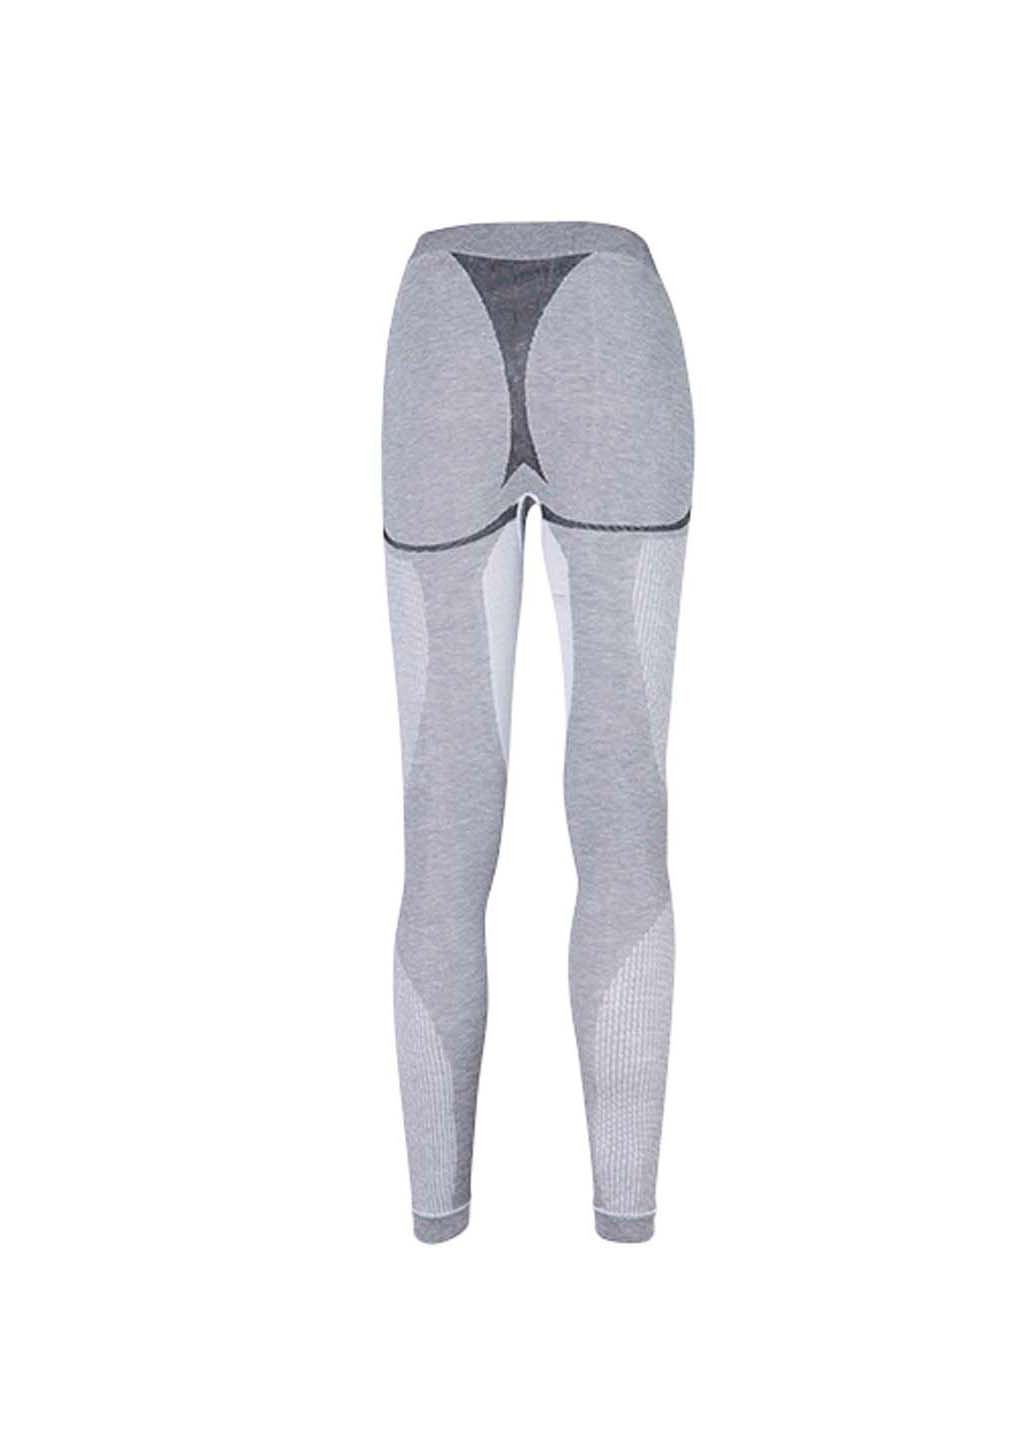 Комплект термобелья Hanna Style свитер + брюки геометрический серый спортивный шерсть, полиамид